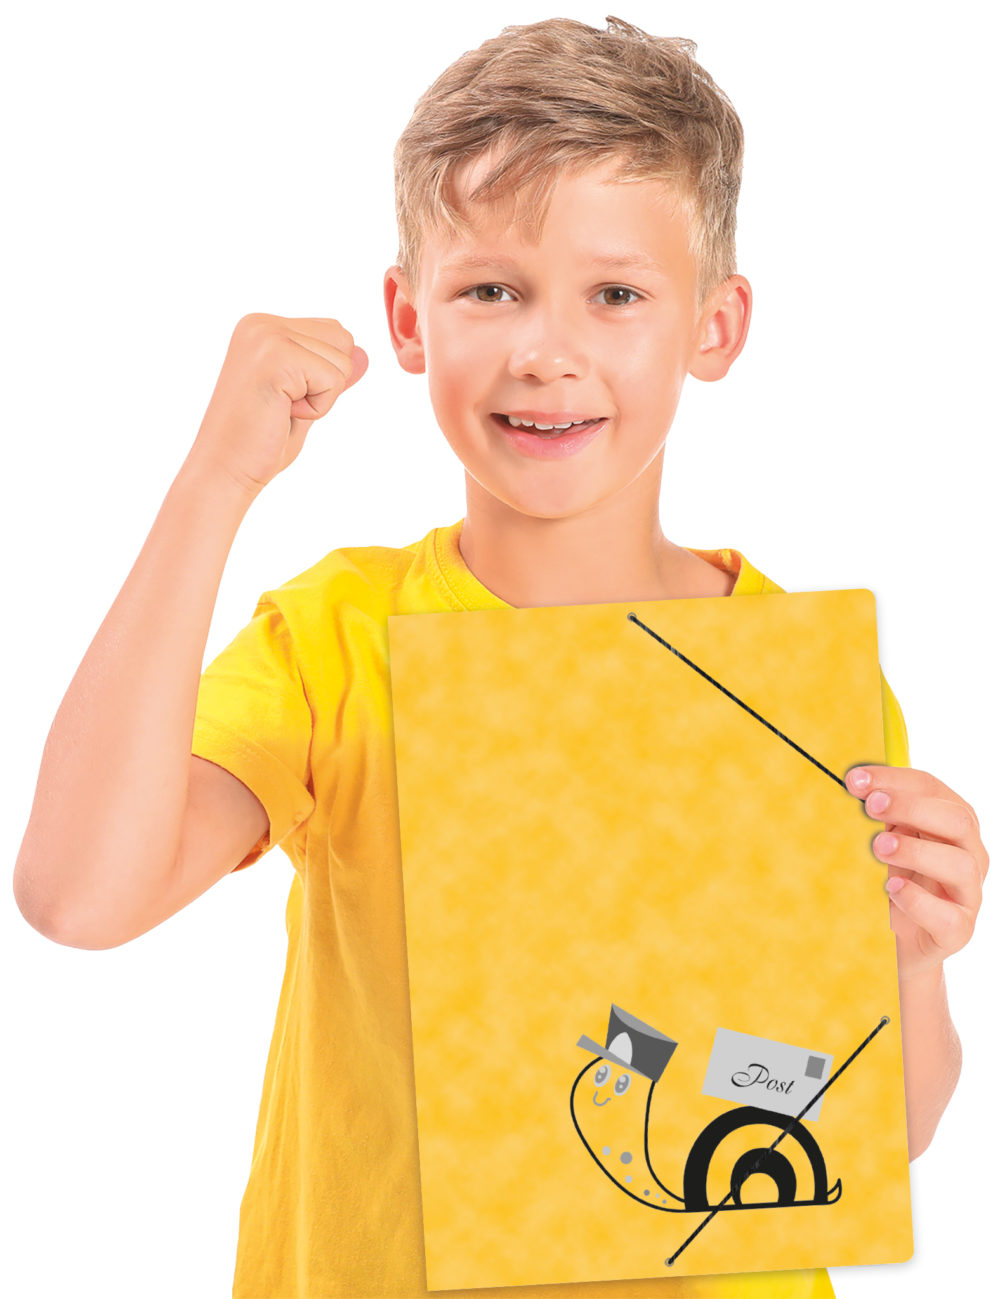 Ein Junge hält die Postmappe vom RNK Verlag mit dem Motiv "Schnecke"